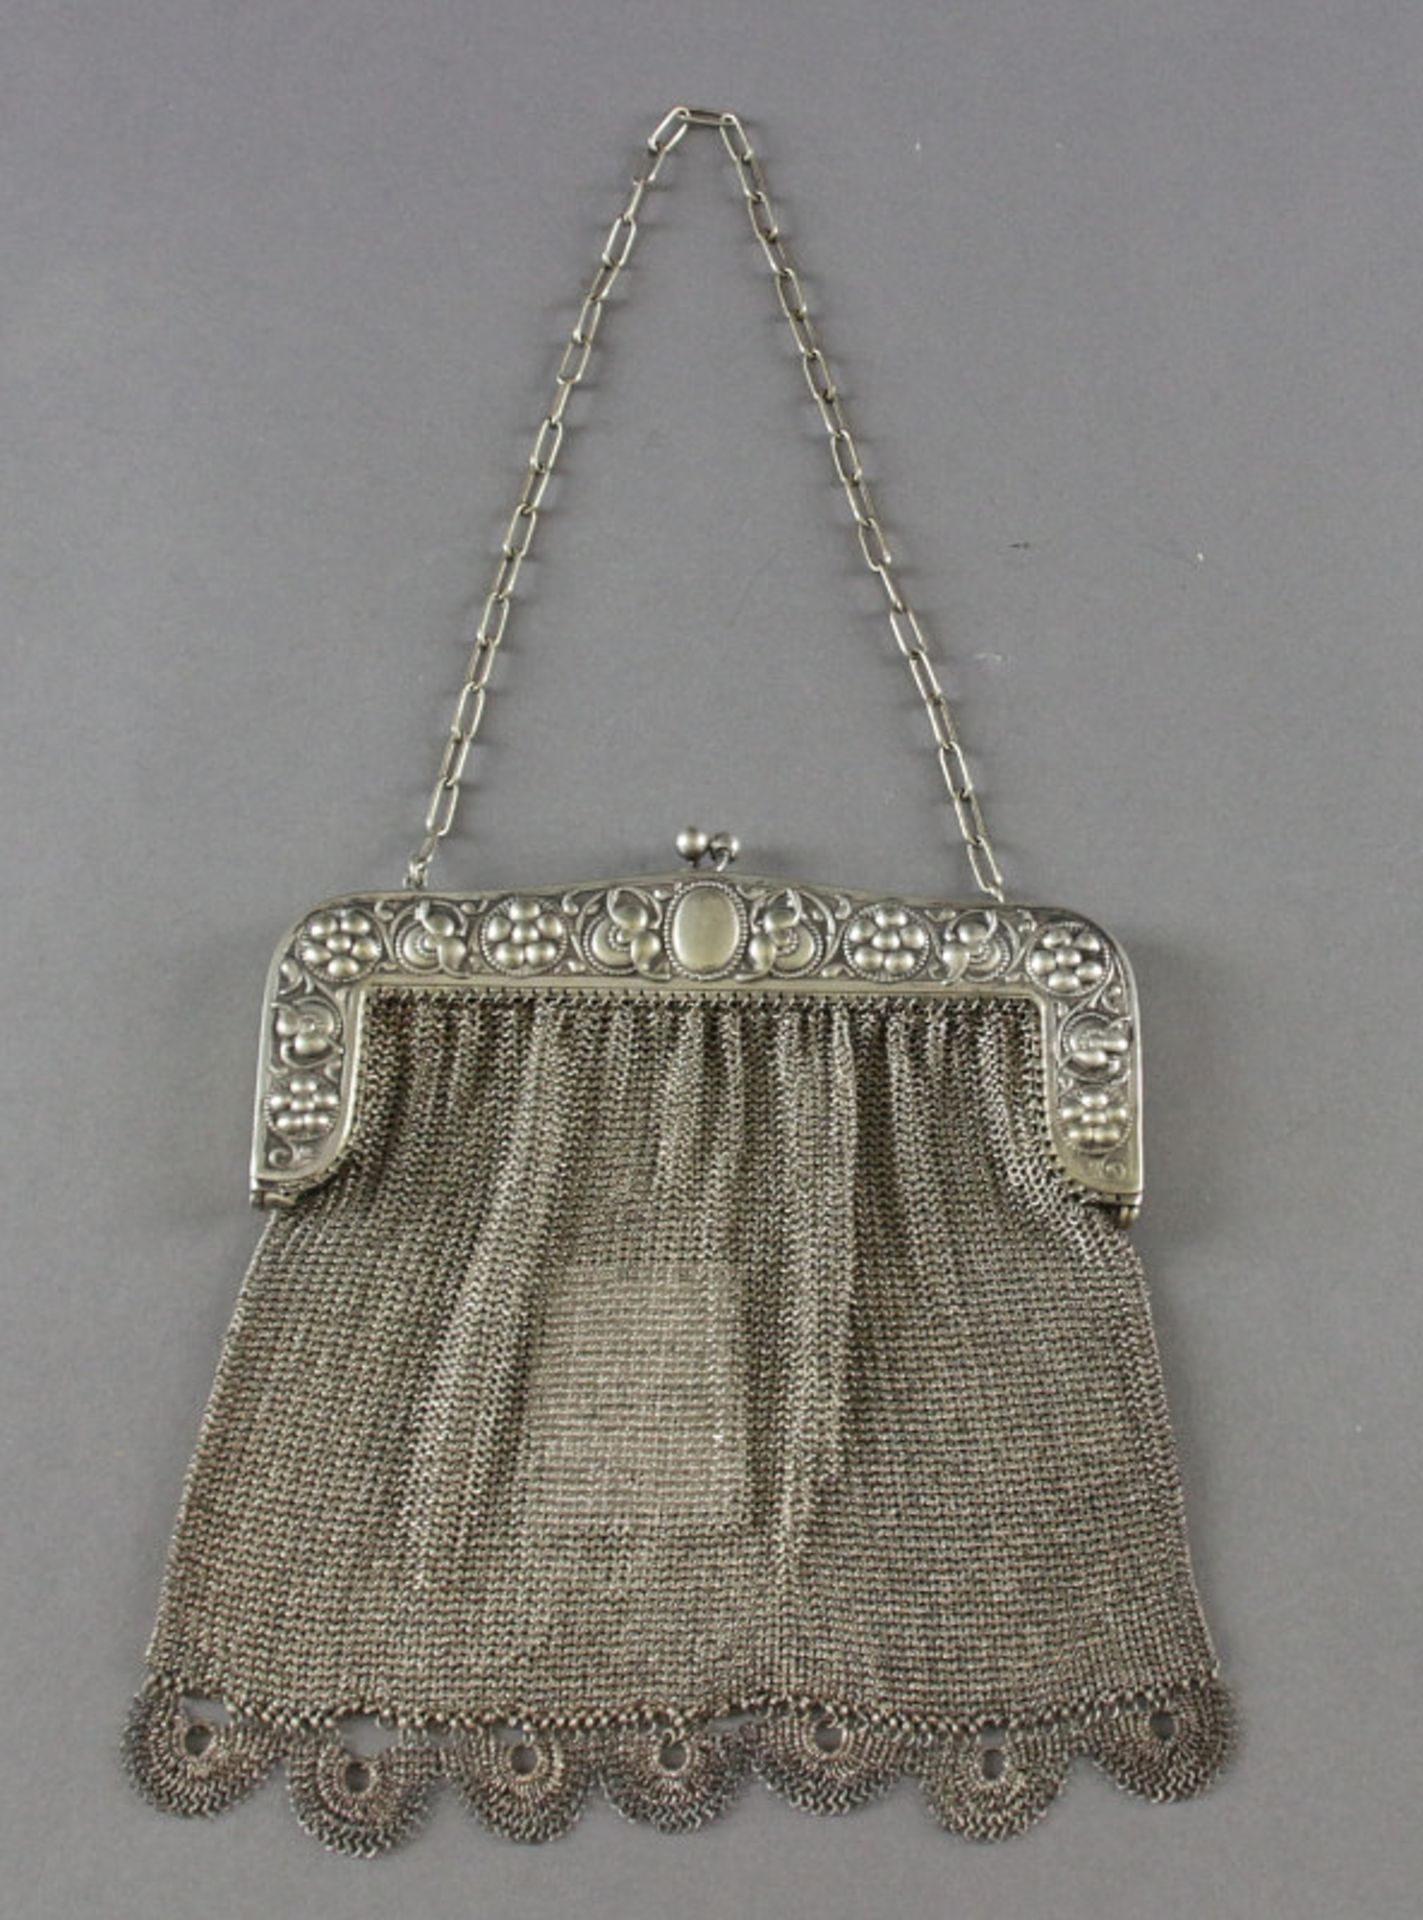 Abendhandtasche aus Alpacca mit geprägter Schließe und kleiner Kette, um 1920Schließe gepunzt "